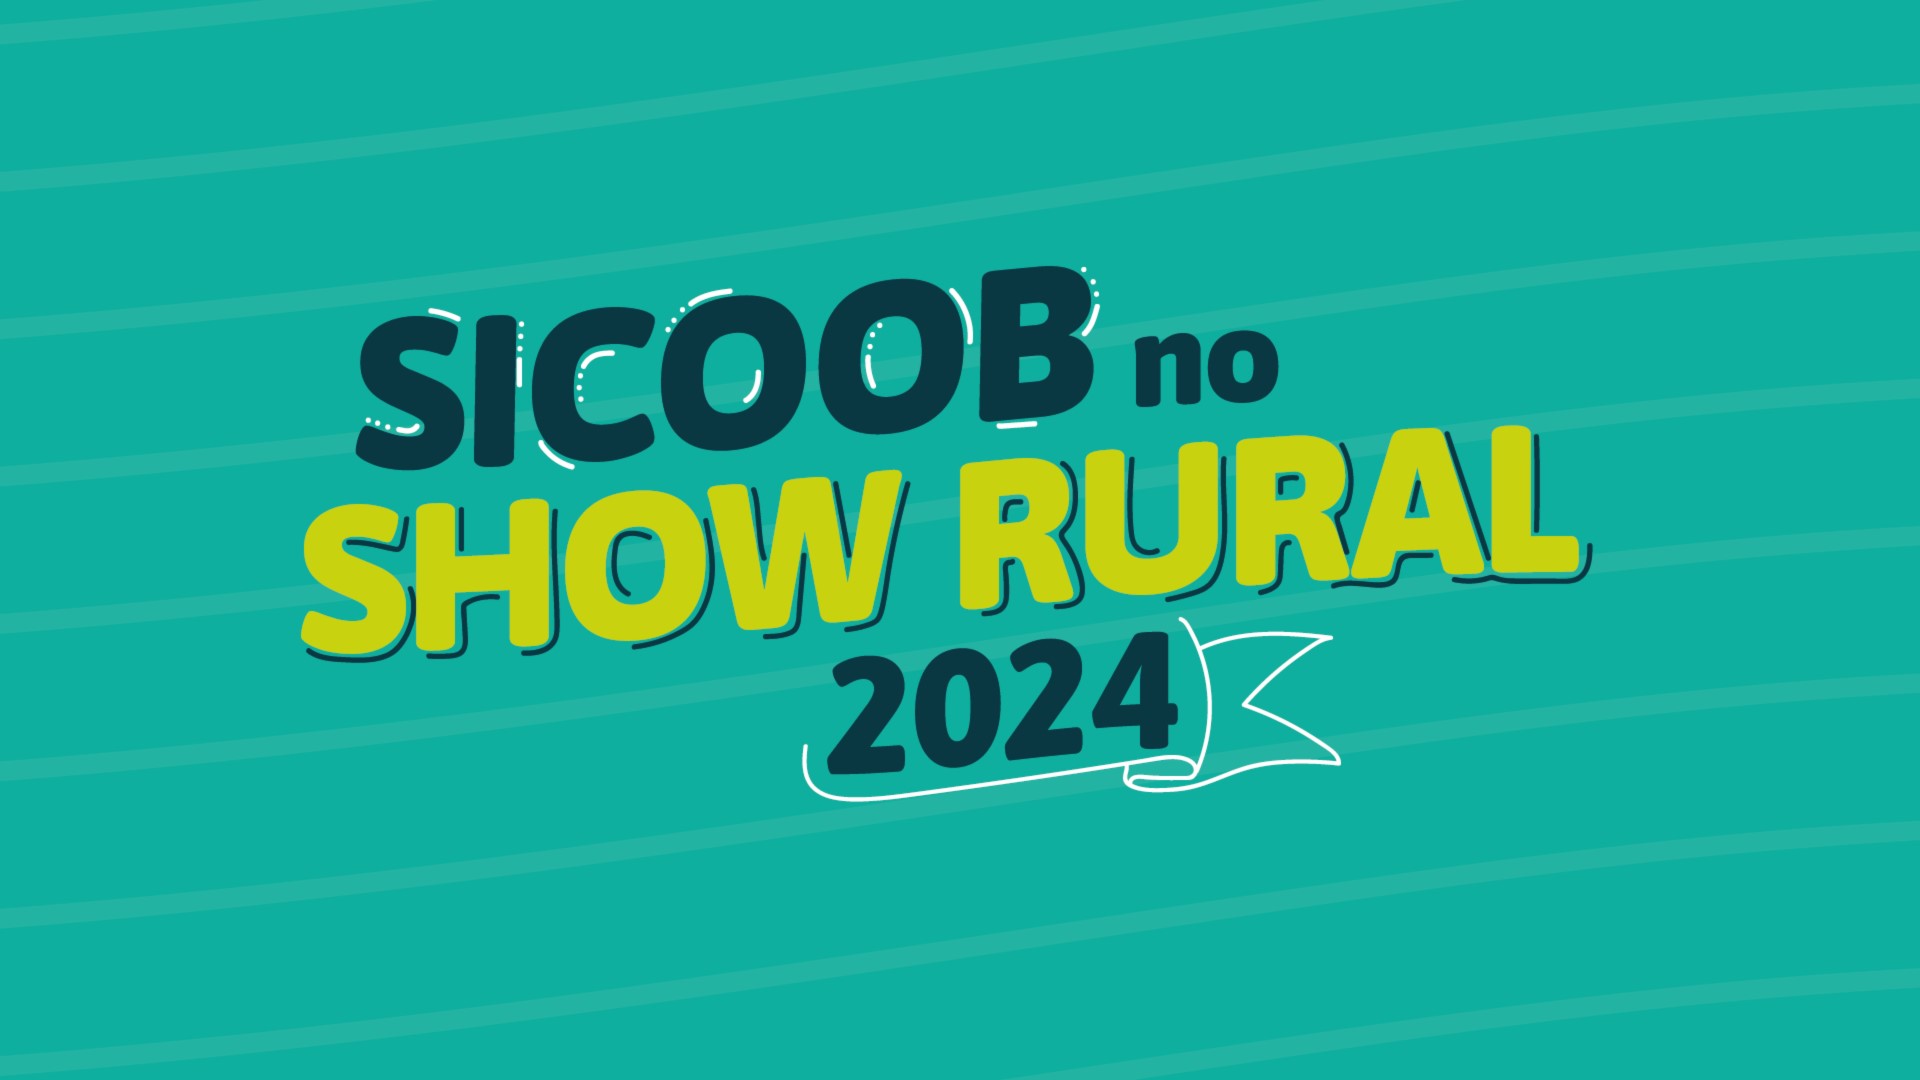 CRÉDITO: Sicoob encerra participação no Show Rural 2024 com mais de R$ 1,6 bilhão em negócios